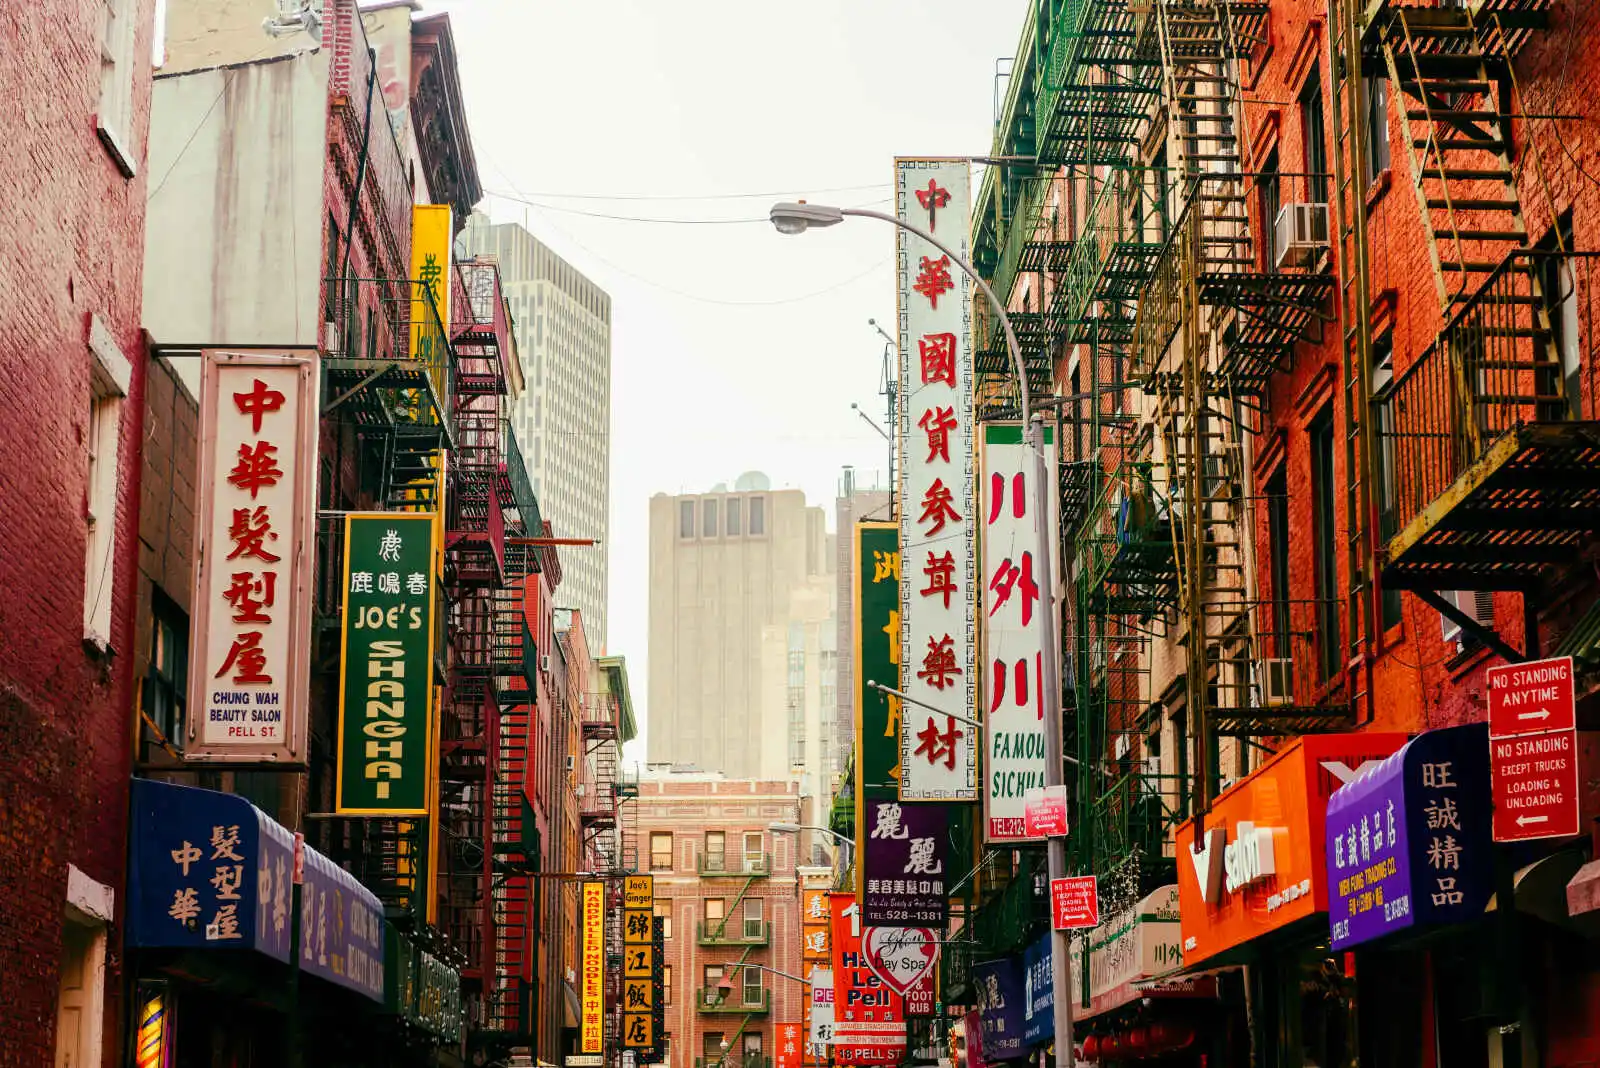 Vue sur une rue de Chinatown (quartier chinois), New York City